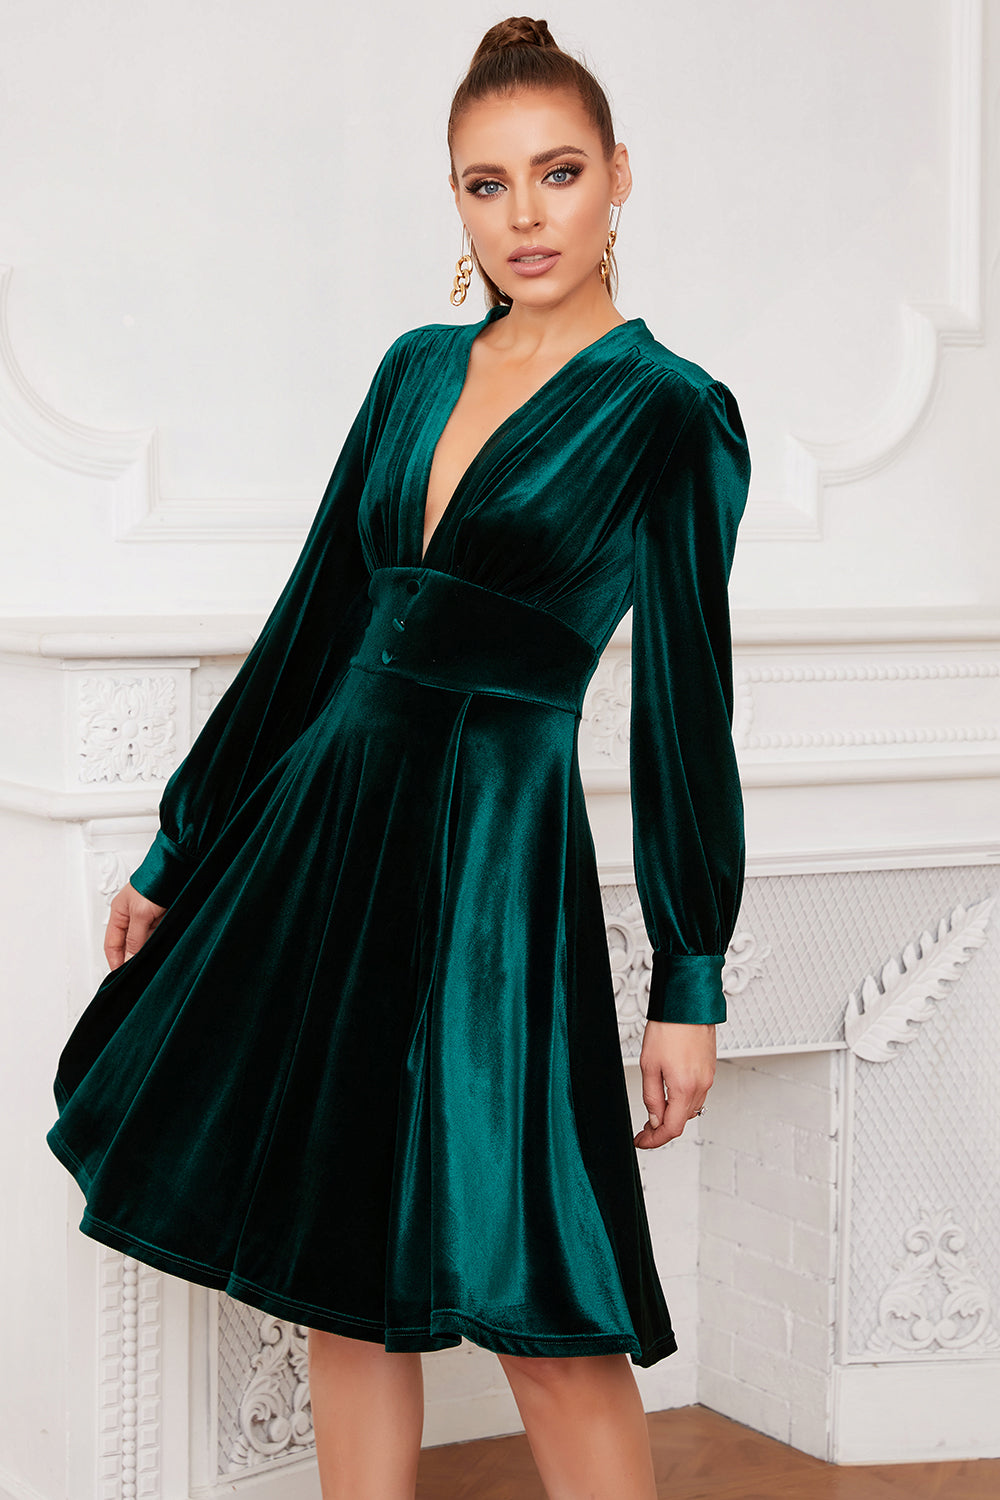 Green Velvet Dressing Gown Emerald Velour Robe Shawl Collar House Coat  Velour Women's Bathrobe Getting Ready Robe - Etsy Israel